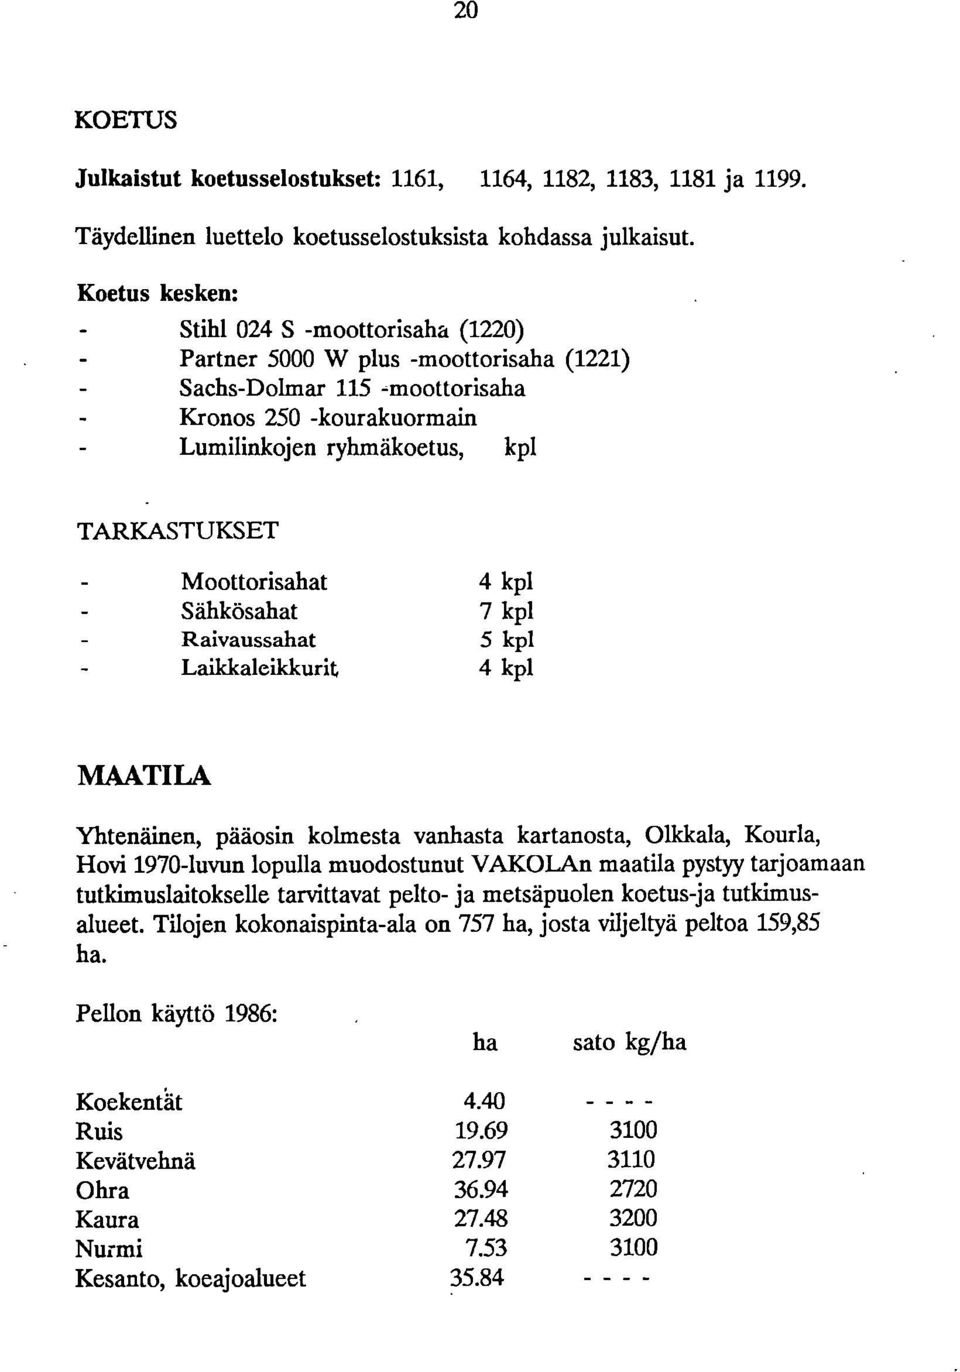 Moottorisahat Sähkösahat Raivaussahat Laildcaleikkurit 4 kpl 7 kpl 5 kpl 4 kpl MAATILA Yhtenäinen, pääosin kolmesta vanhasta kartanosta, Olkkala, Kourla, Hovi 1970-luvun lopulla muodostunut VAKOLAn